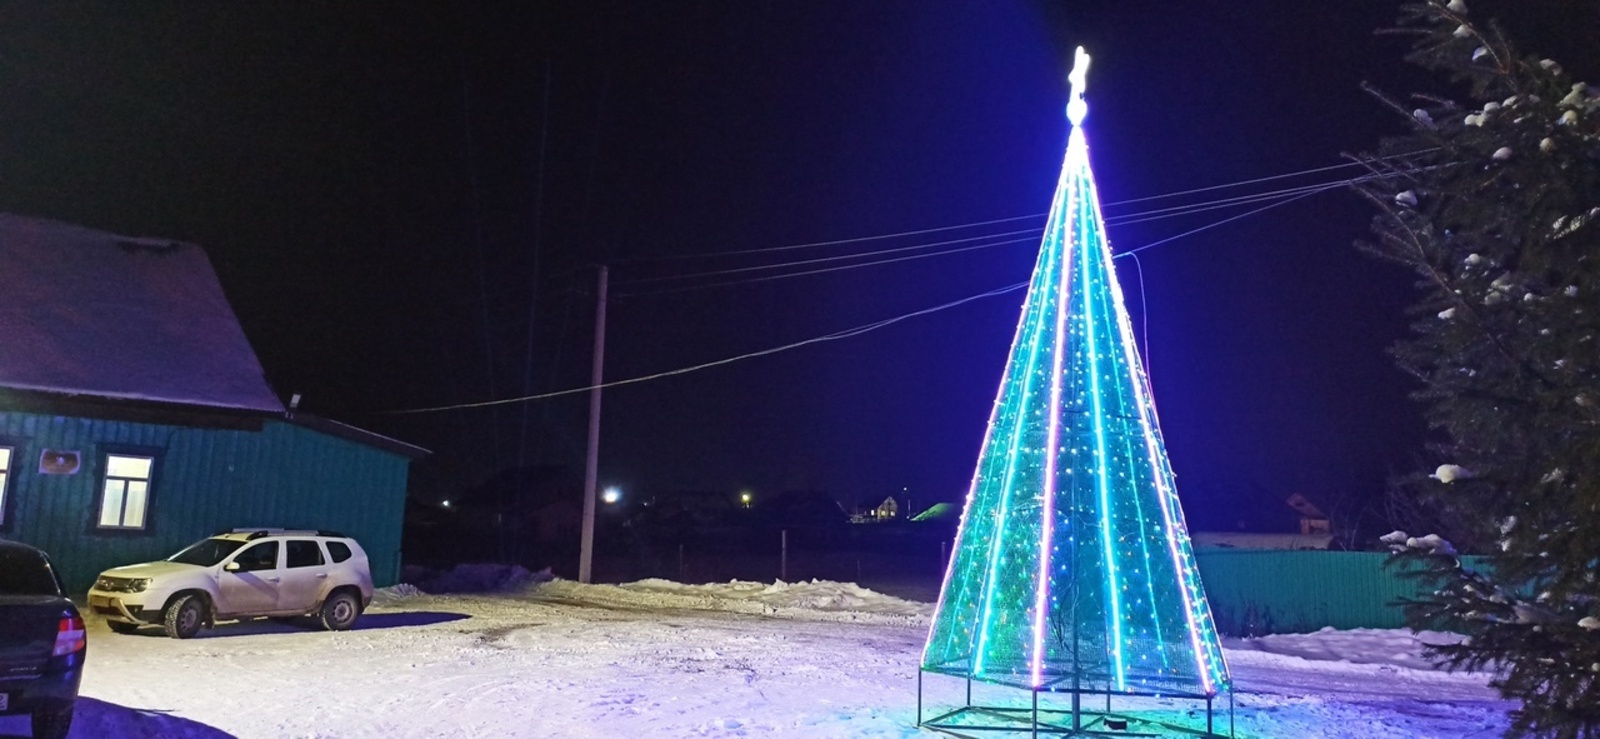 В одном из сёл Краснокамского района Башкирии установили необычную ёлку